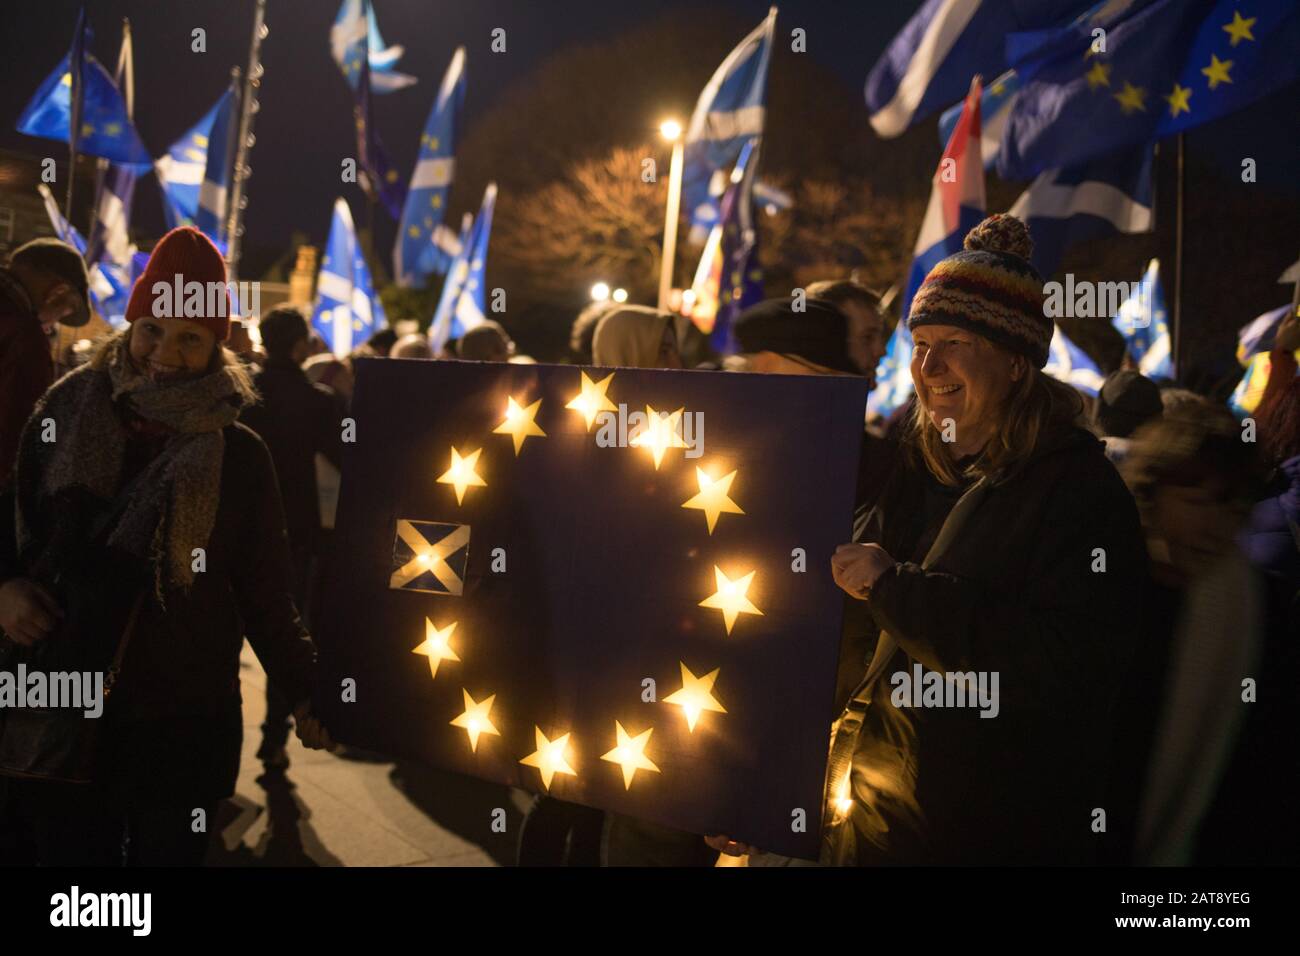 Édimbourg, Royaume-Uni. 31 janvier 2020. Le rassemblement De Protestation du jour du Brexit, en dehors du Parlement écossais, qui s'est construit le soir où le Royaume-Uni quitte l'Union européenne. Crédit: Jeremy sutton-hibbert/Alay Live News Banque D'Images